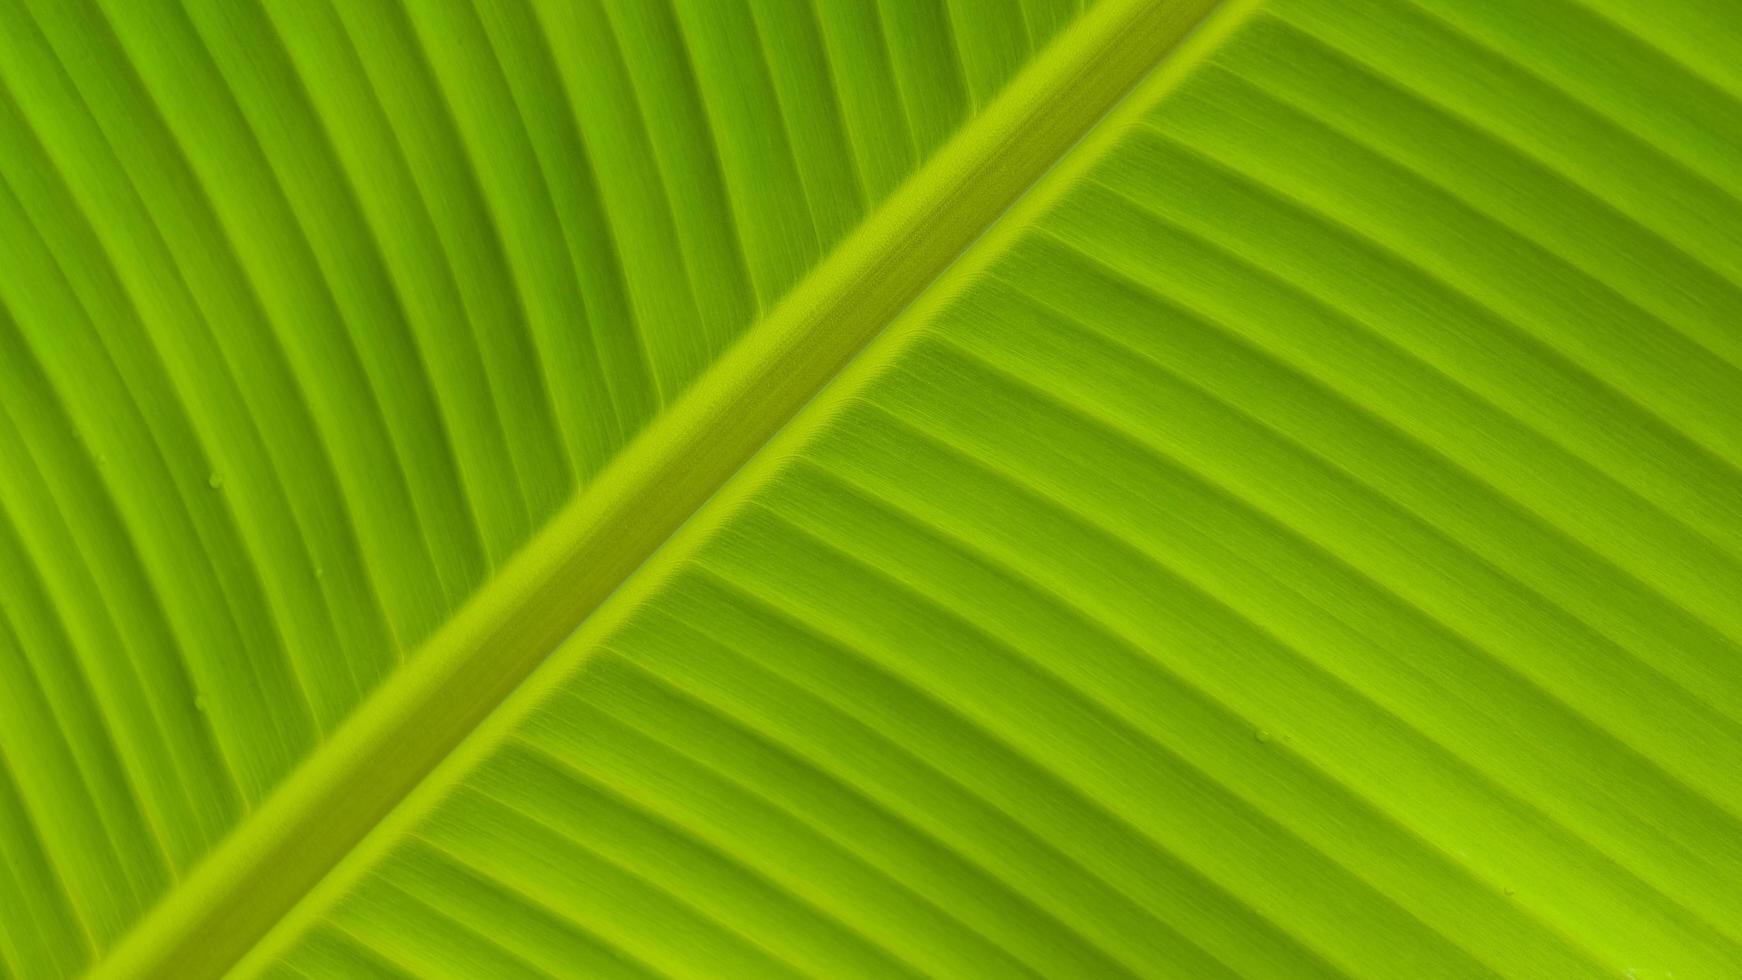 close-up veervormig parallelle nervenstrepen op het oppervlak van groen bananenblad voor gezond groen gebladerte achtergrondconcept foto